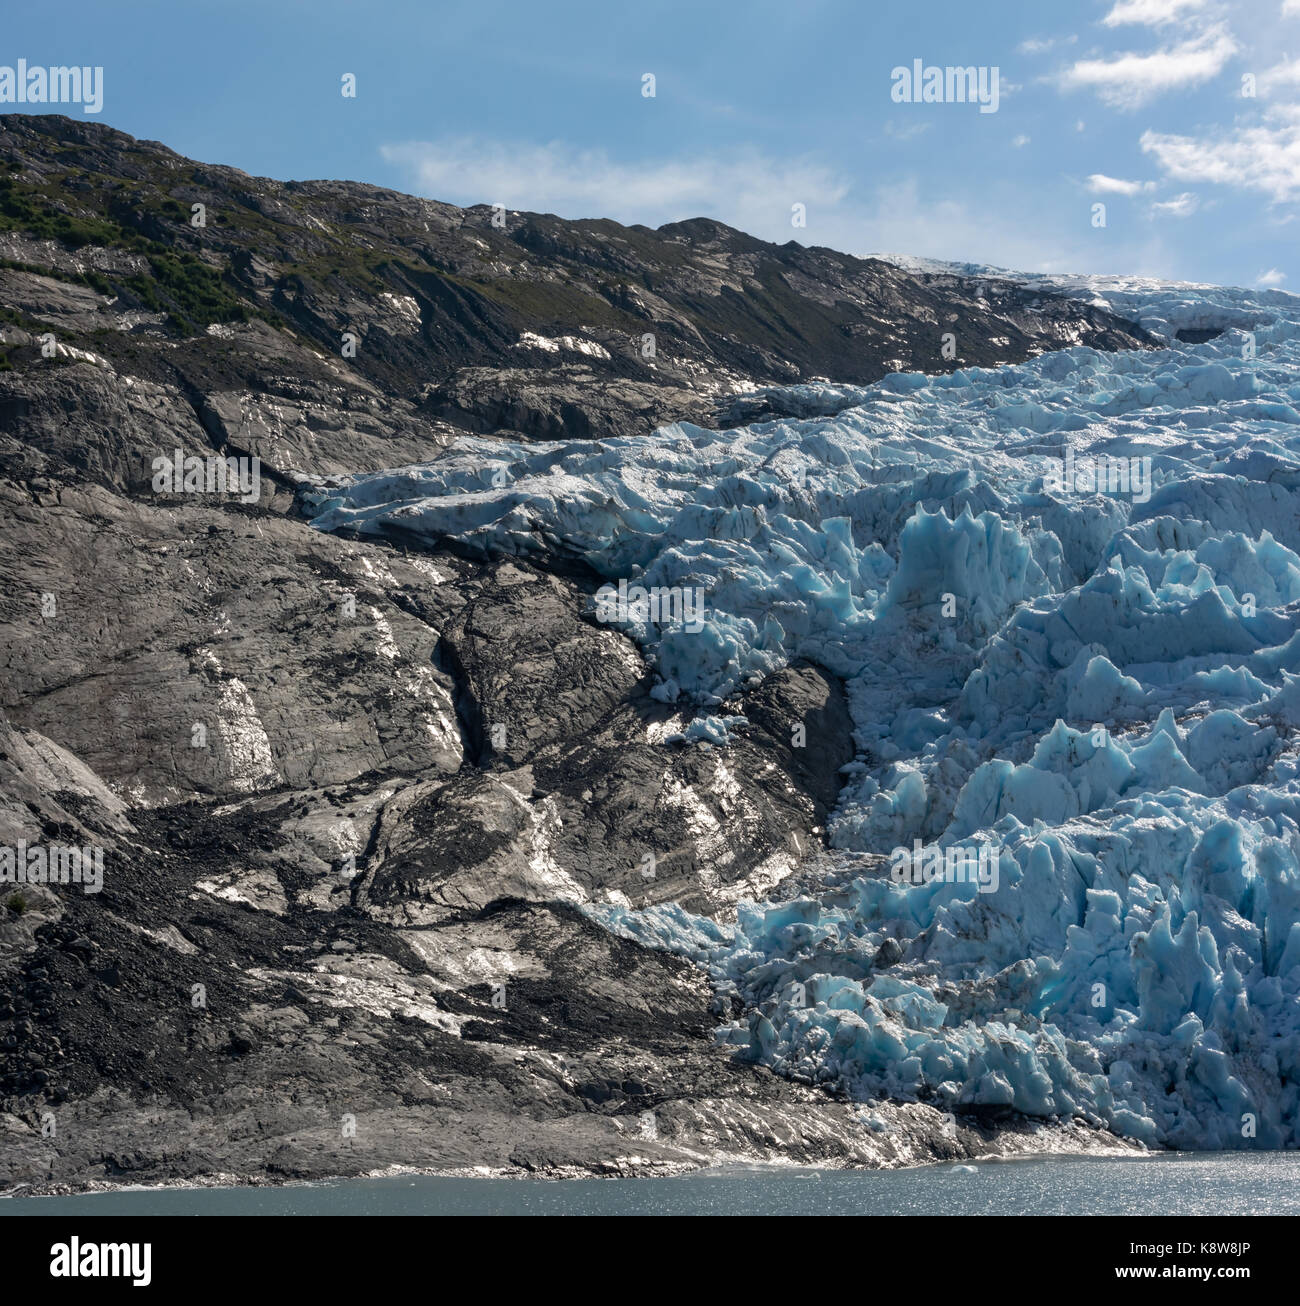 La glace d'un bleu glacier est un net contraste avec le noir de la roche exposée falaise. Banque D'Images